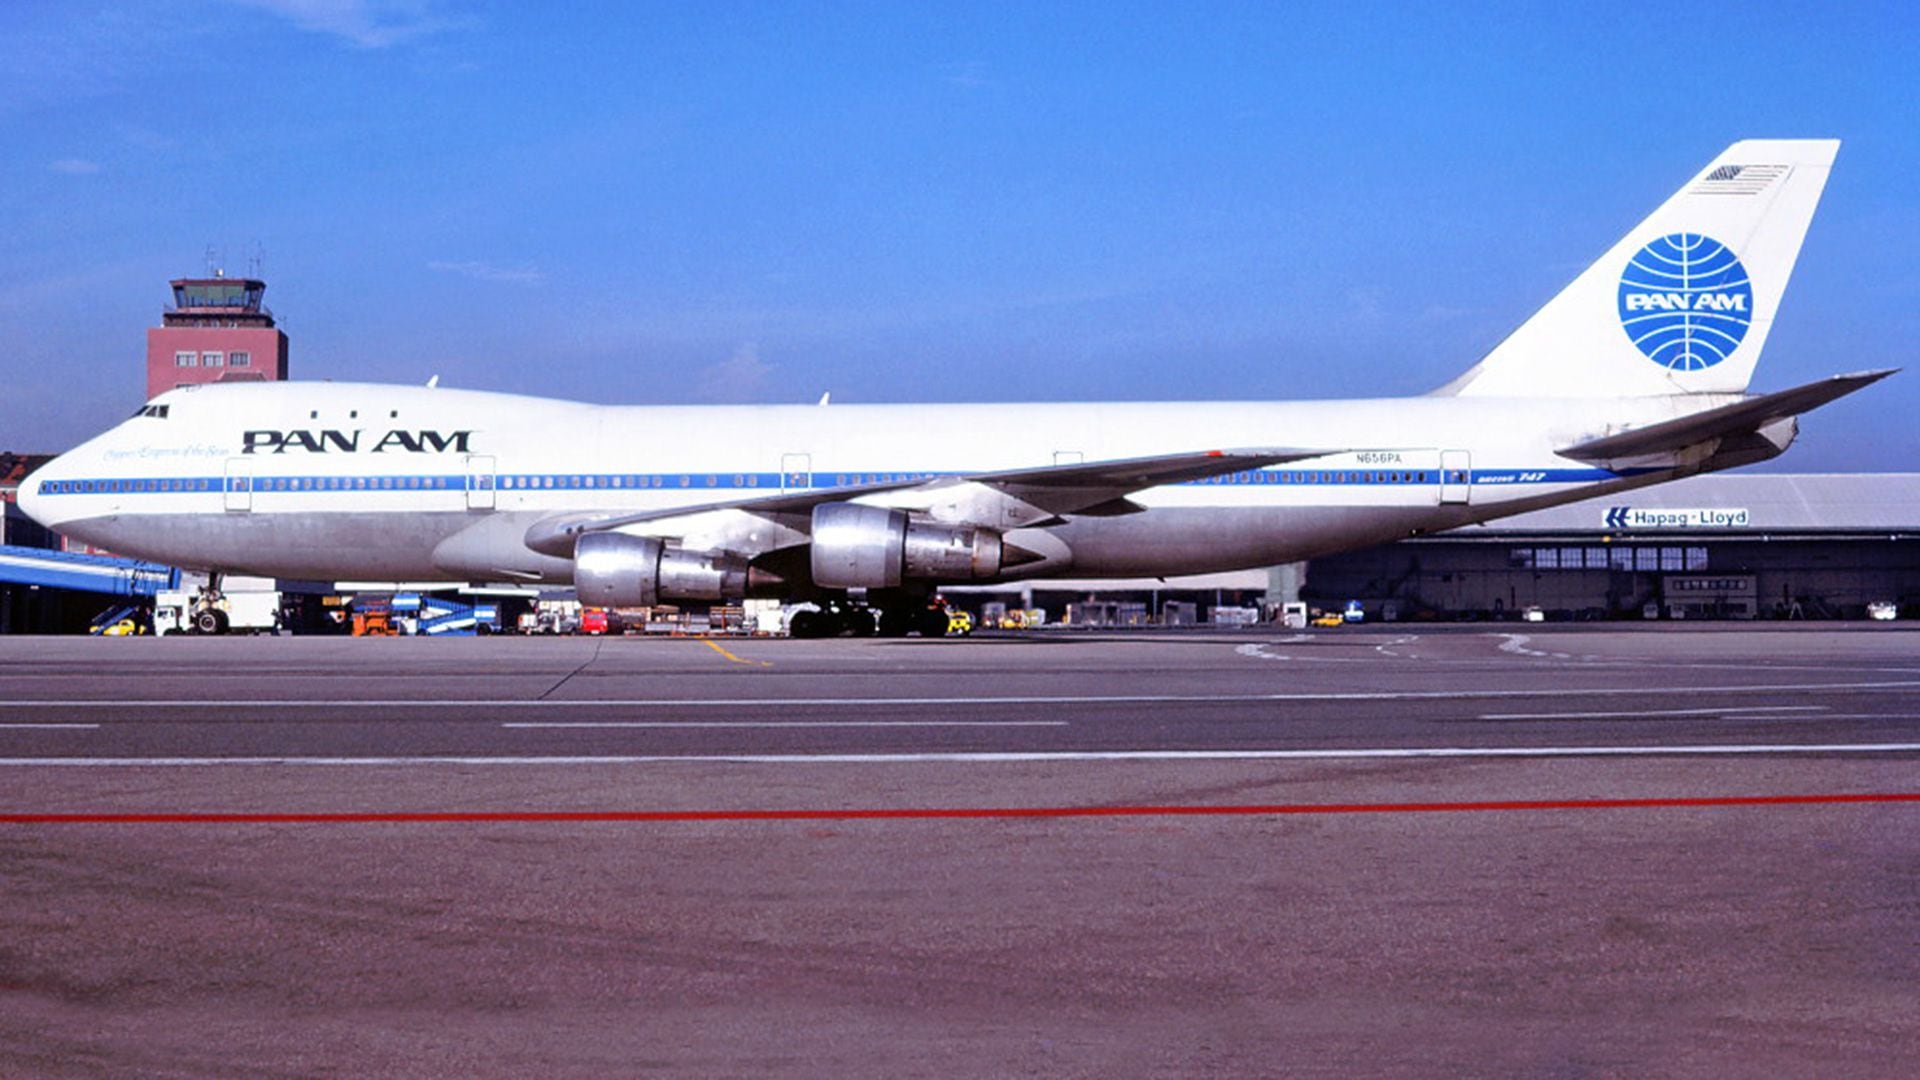 El 5 de septiembre de 1985 a la madrugada, el vuelo 73 de Pan Am, que había despegado en Bombay, India, aterrizó en Karachi, Pakistán, donde bajaron 109 pasajeros